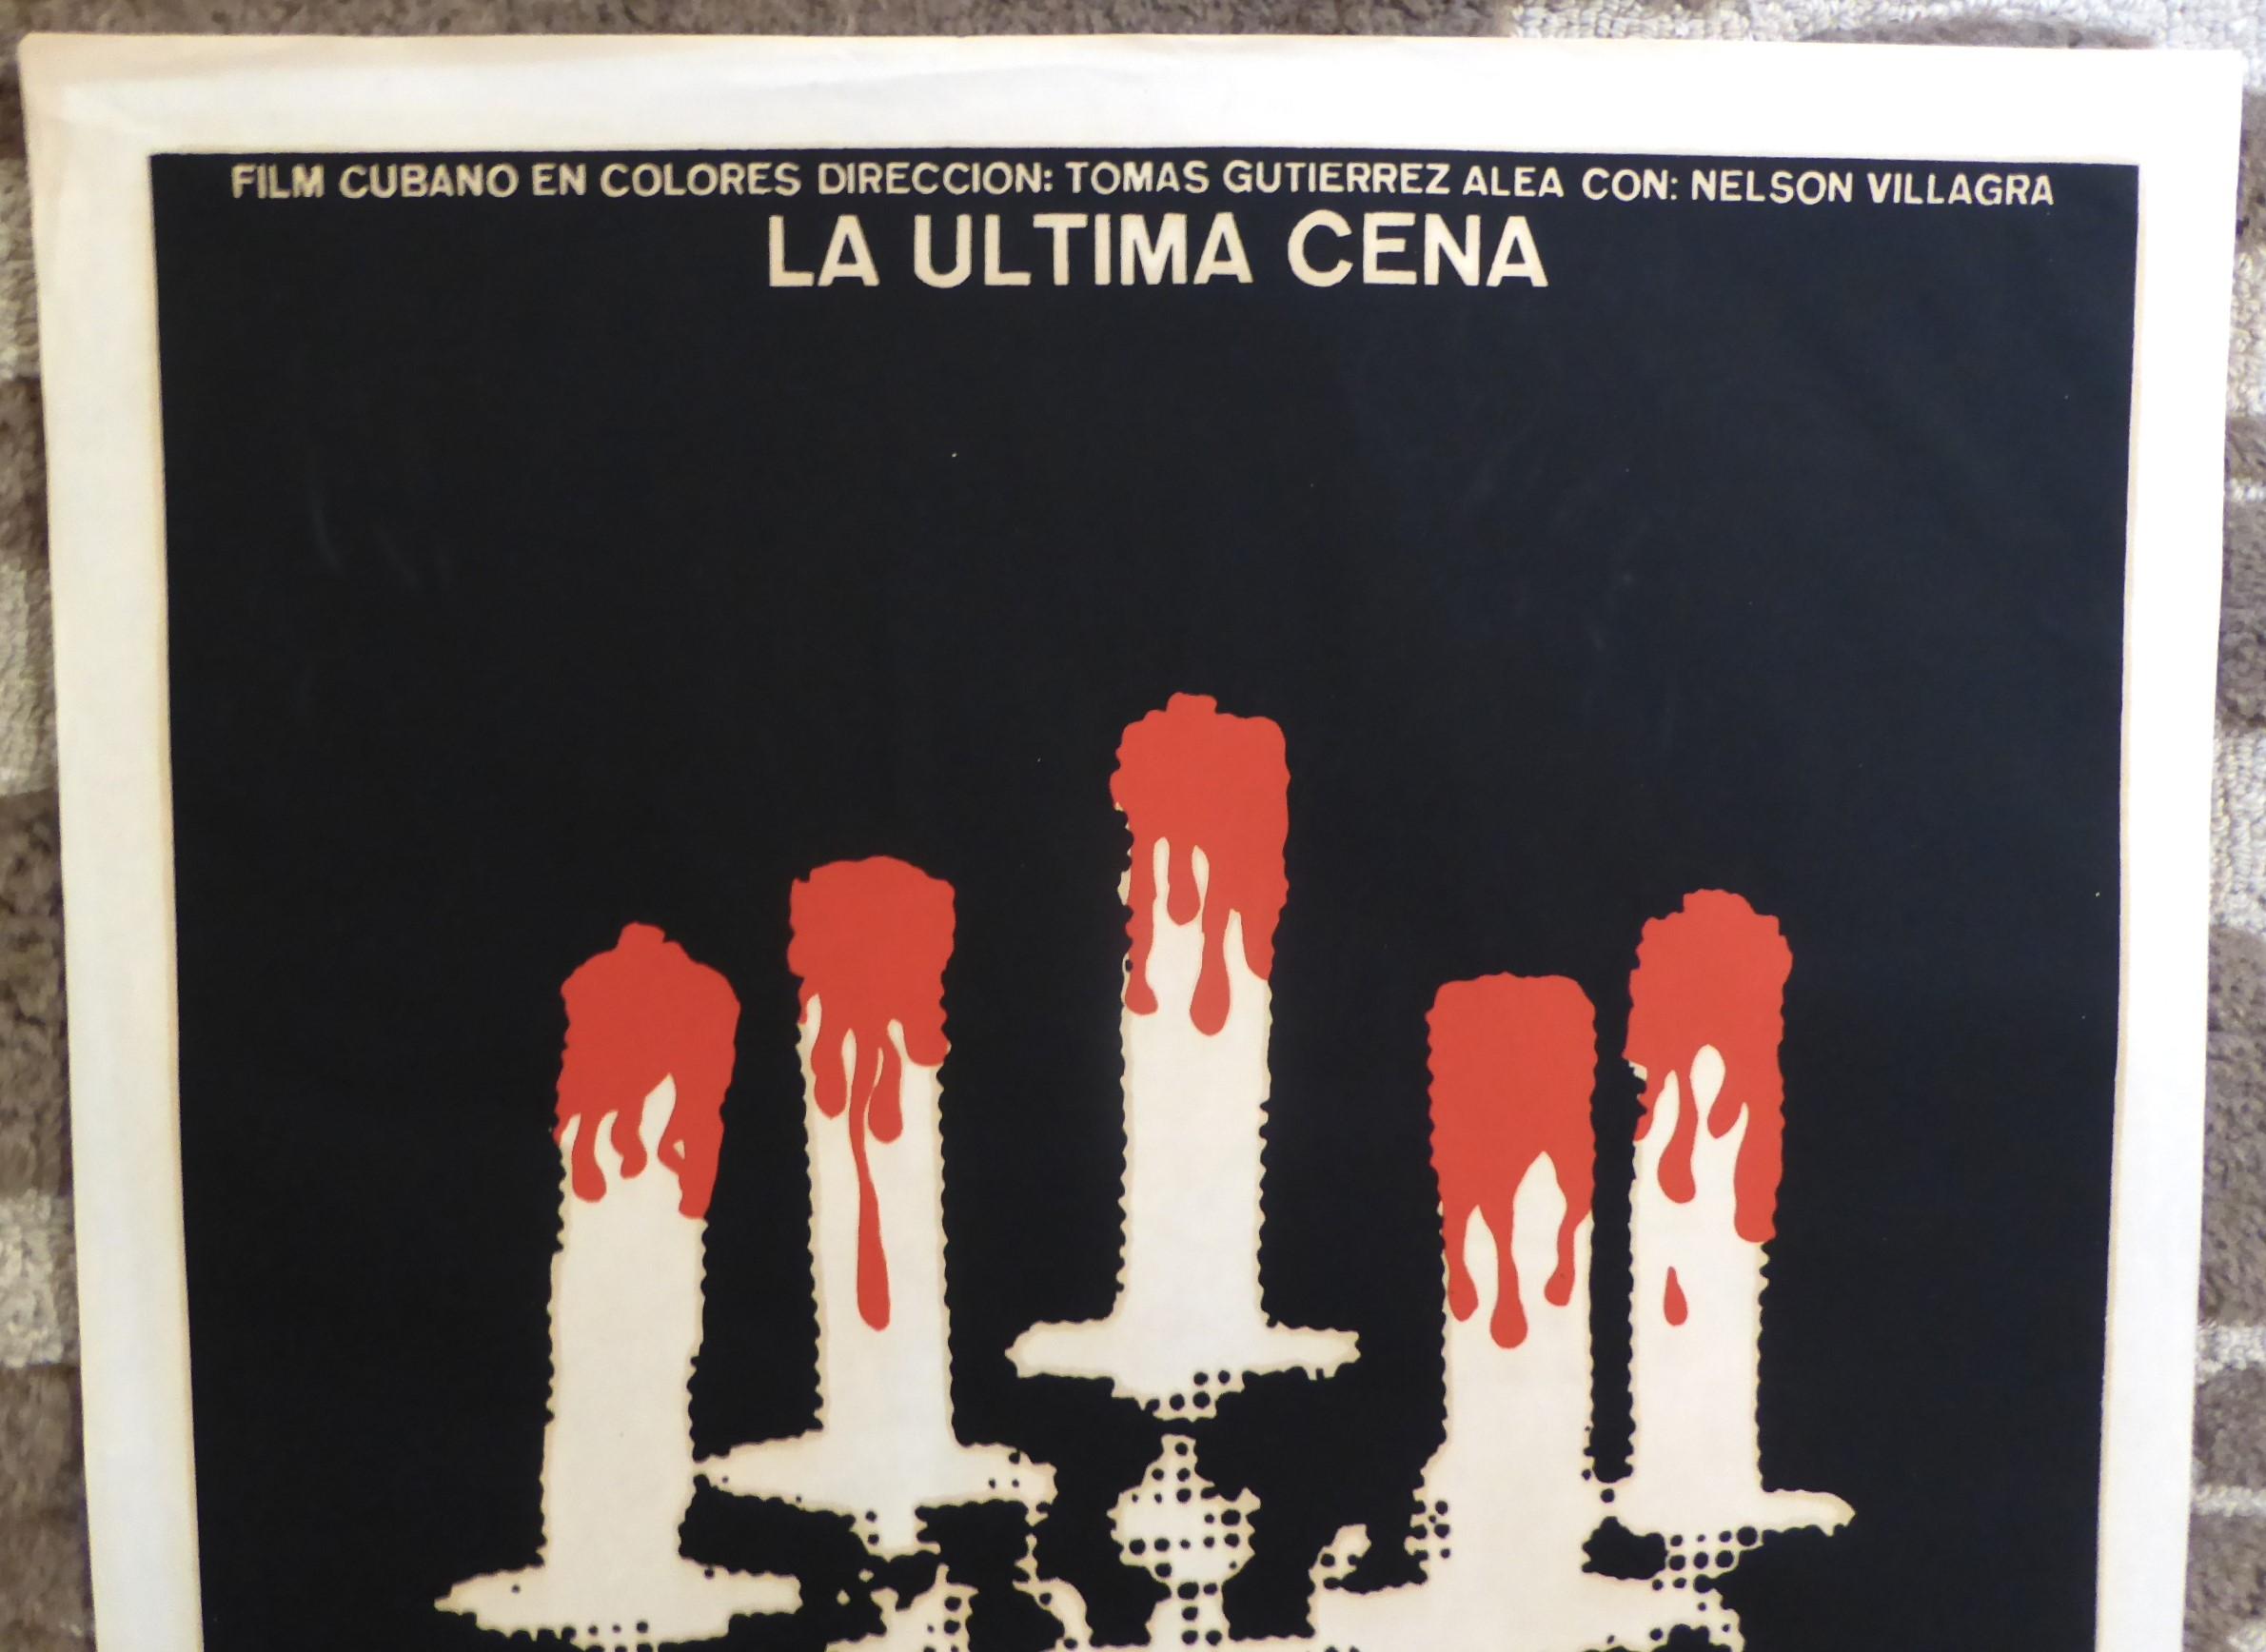 Central American Vintage Film Poster La Ultima Cena Cuban Movie 1977 by Tomas Gutierrez /R. Azcuy For Sale